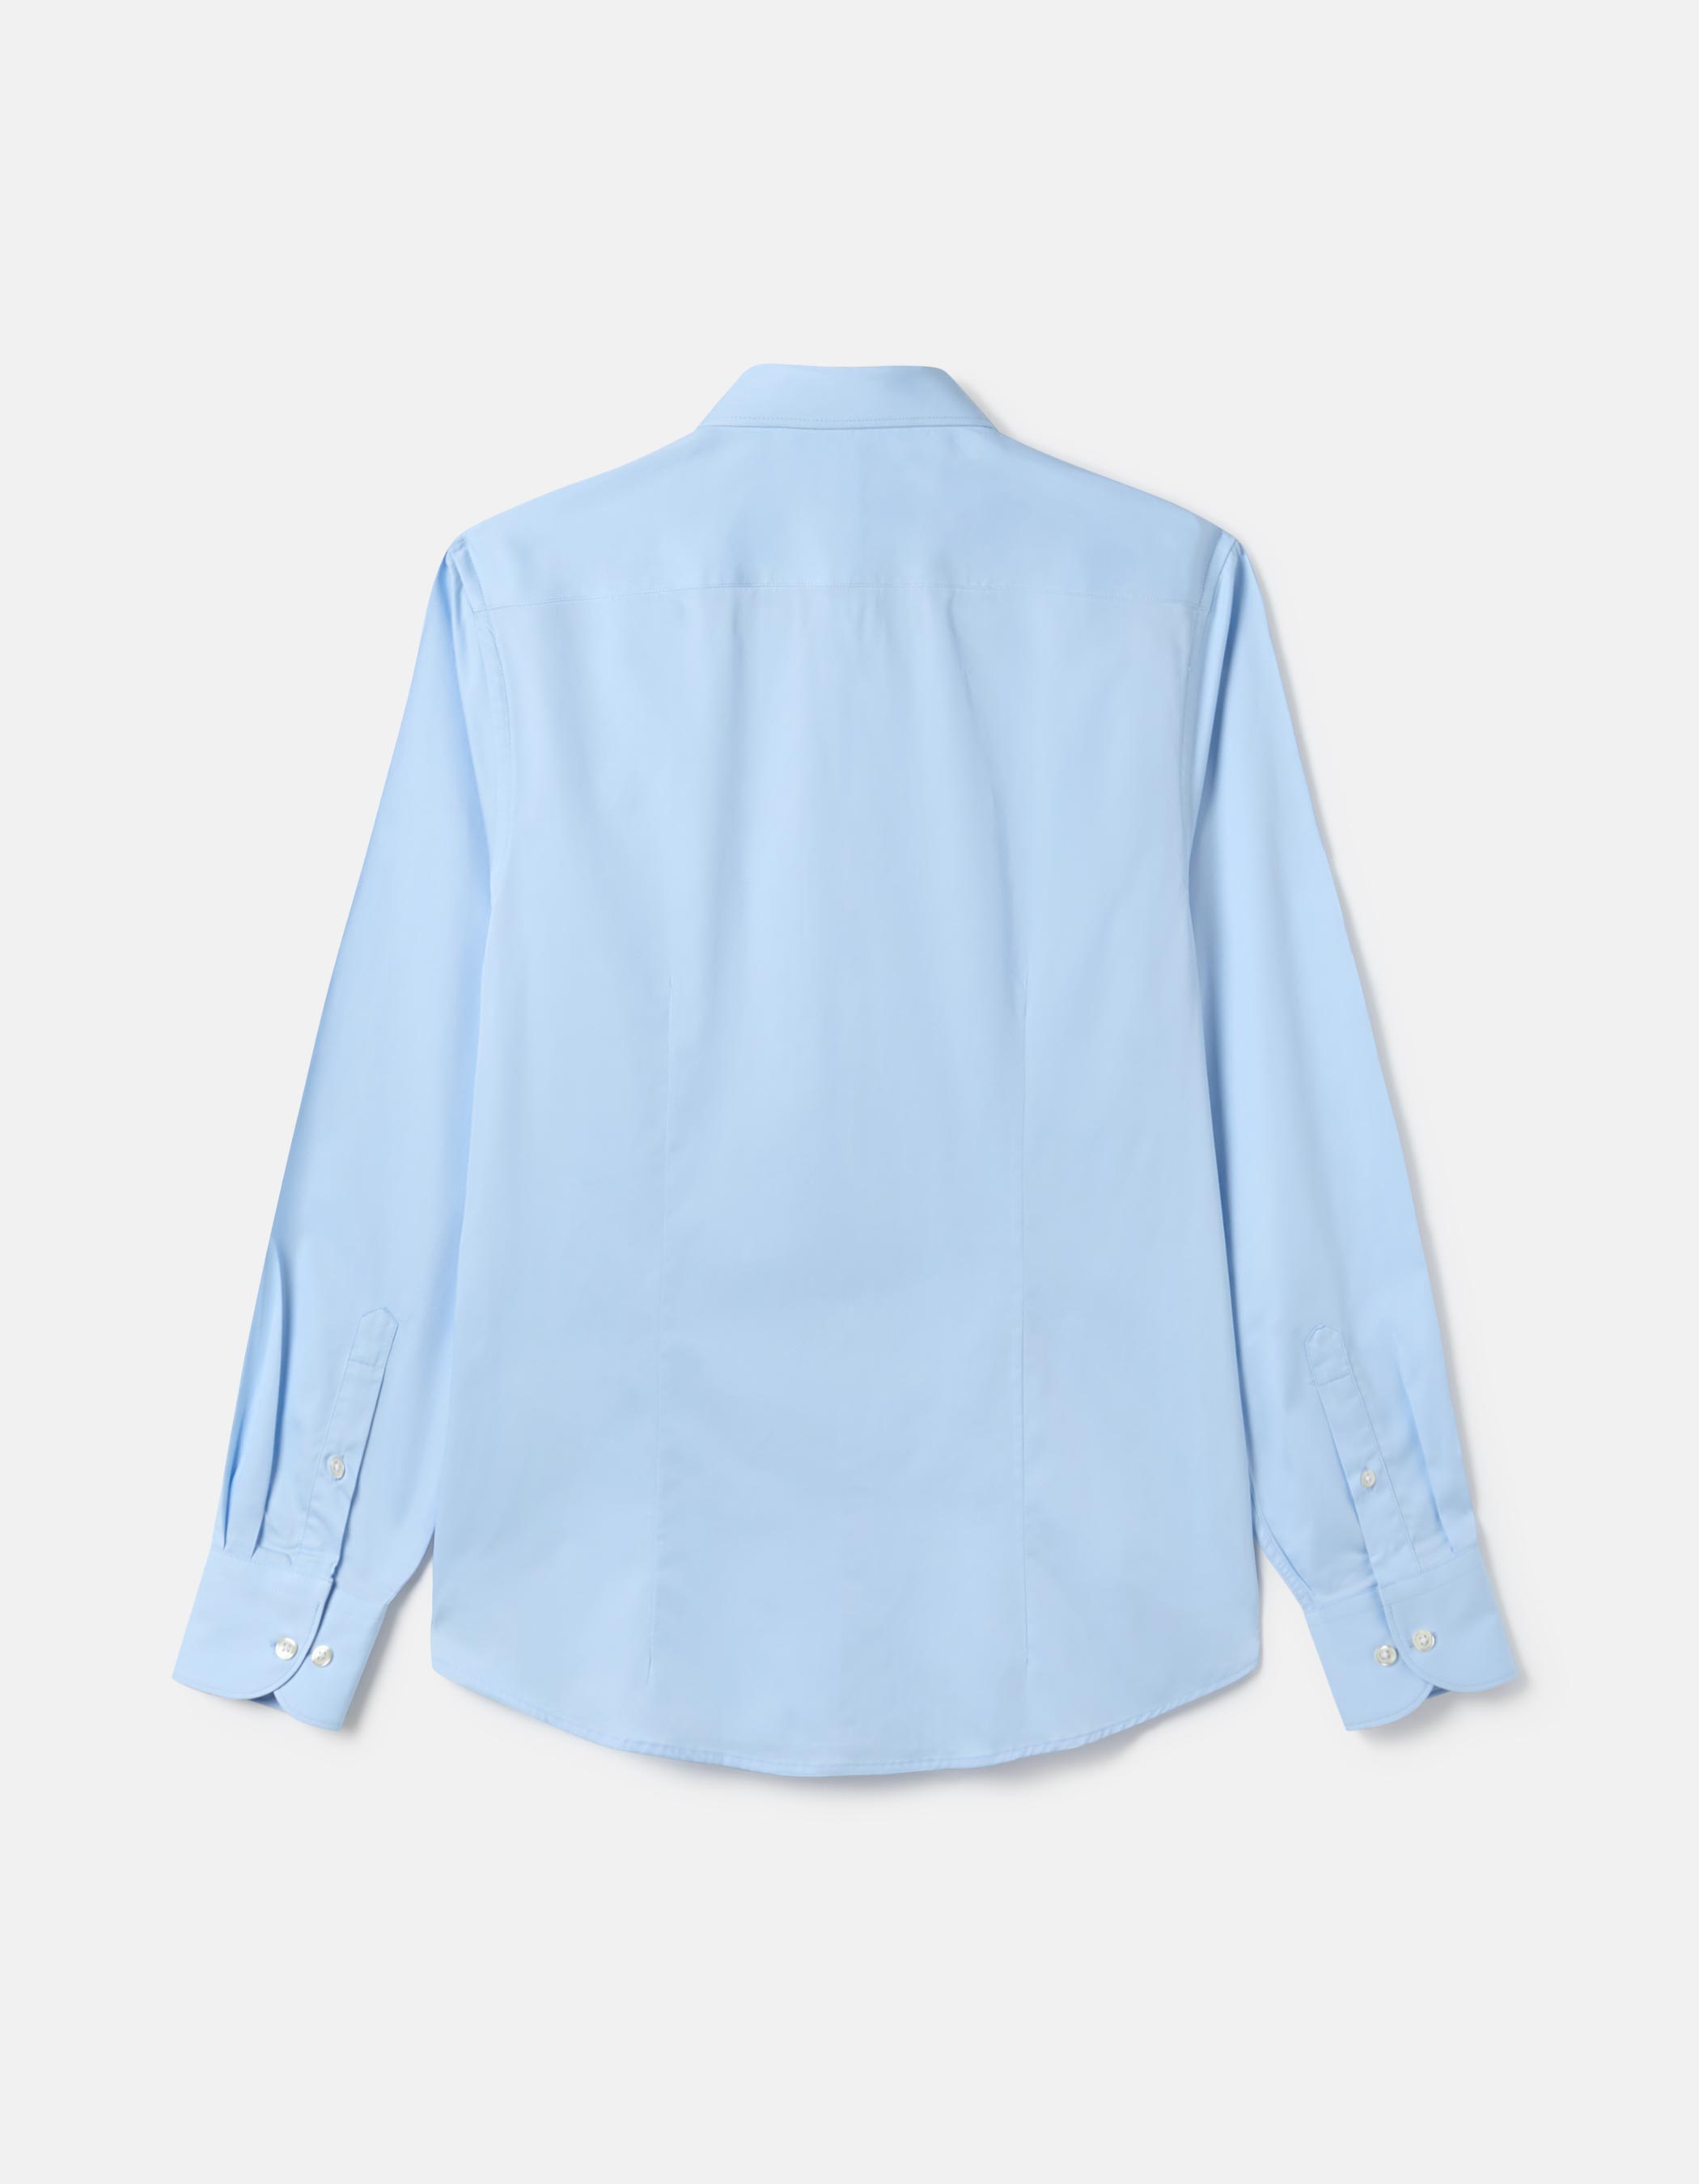 Plain light blue shirt 1